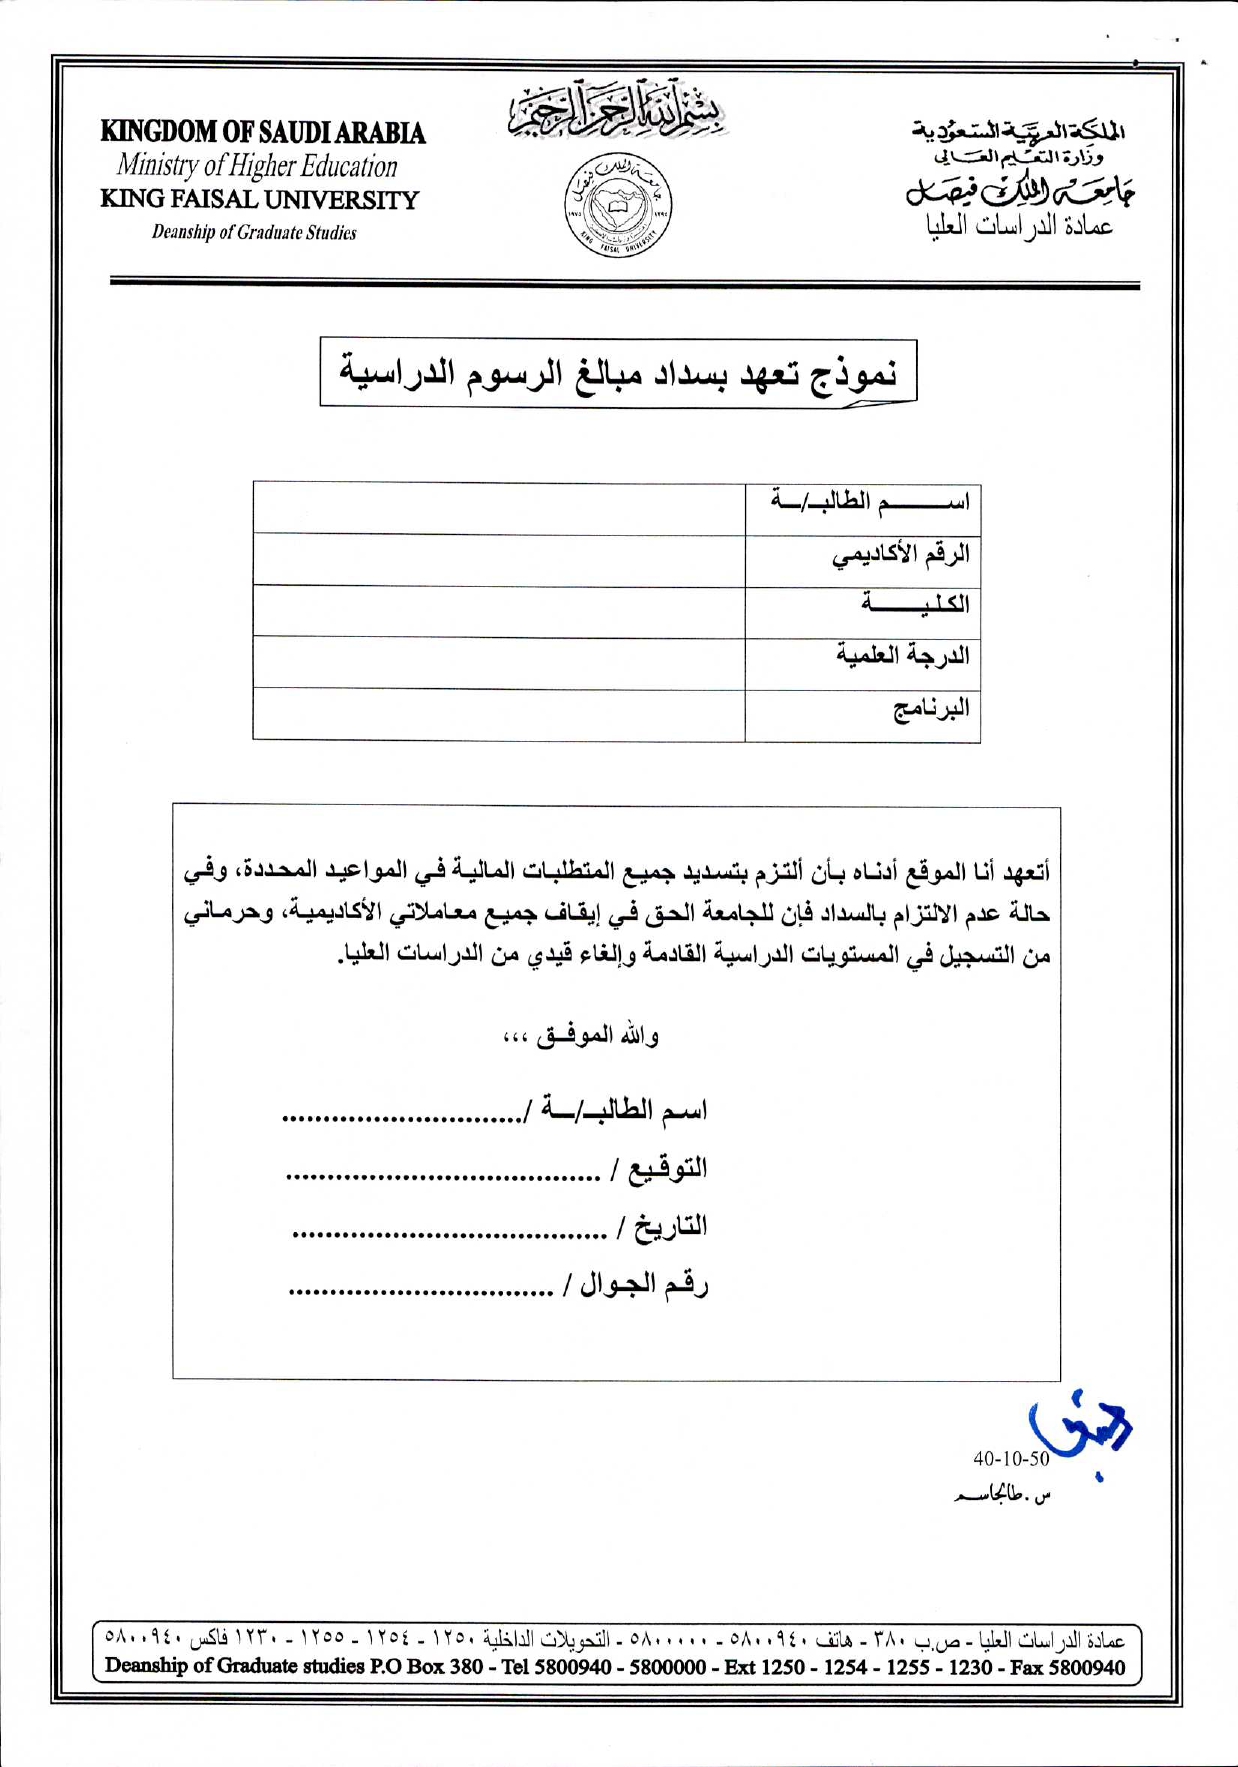 نموذج تعهد الطالب جامعة الملك فيصل